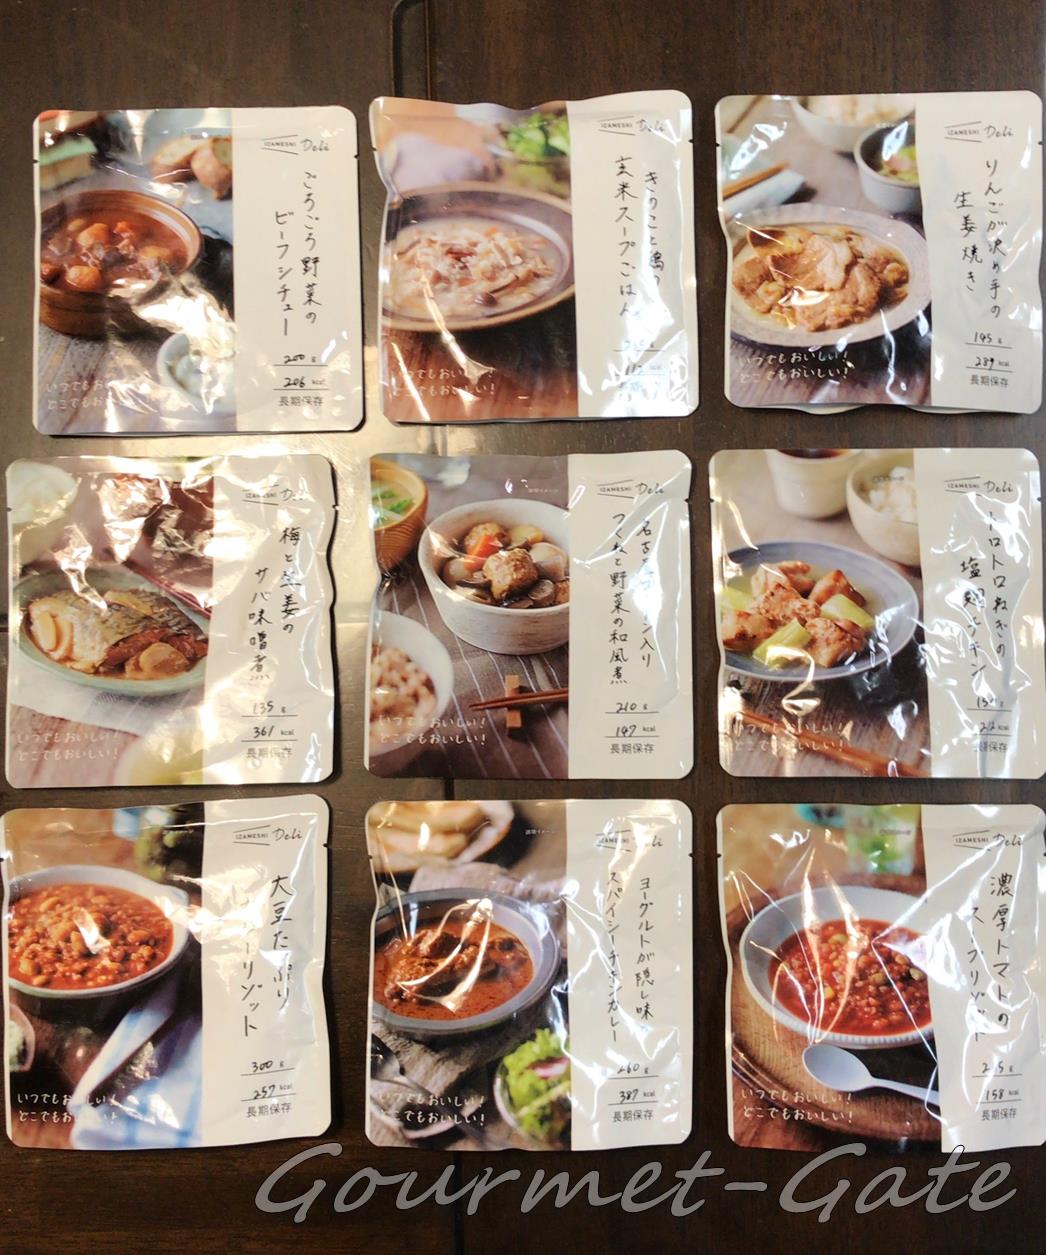 実食】ウマイ非常食レポート4「IZAMESHI Deli」 - 実食レビュー＆自前画像だけのブログ～グルメの扉～